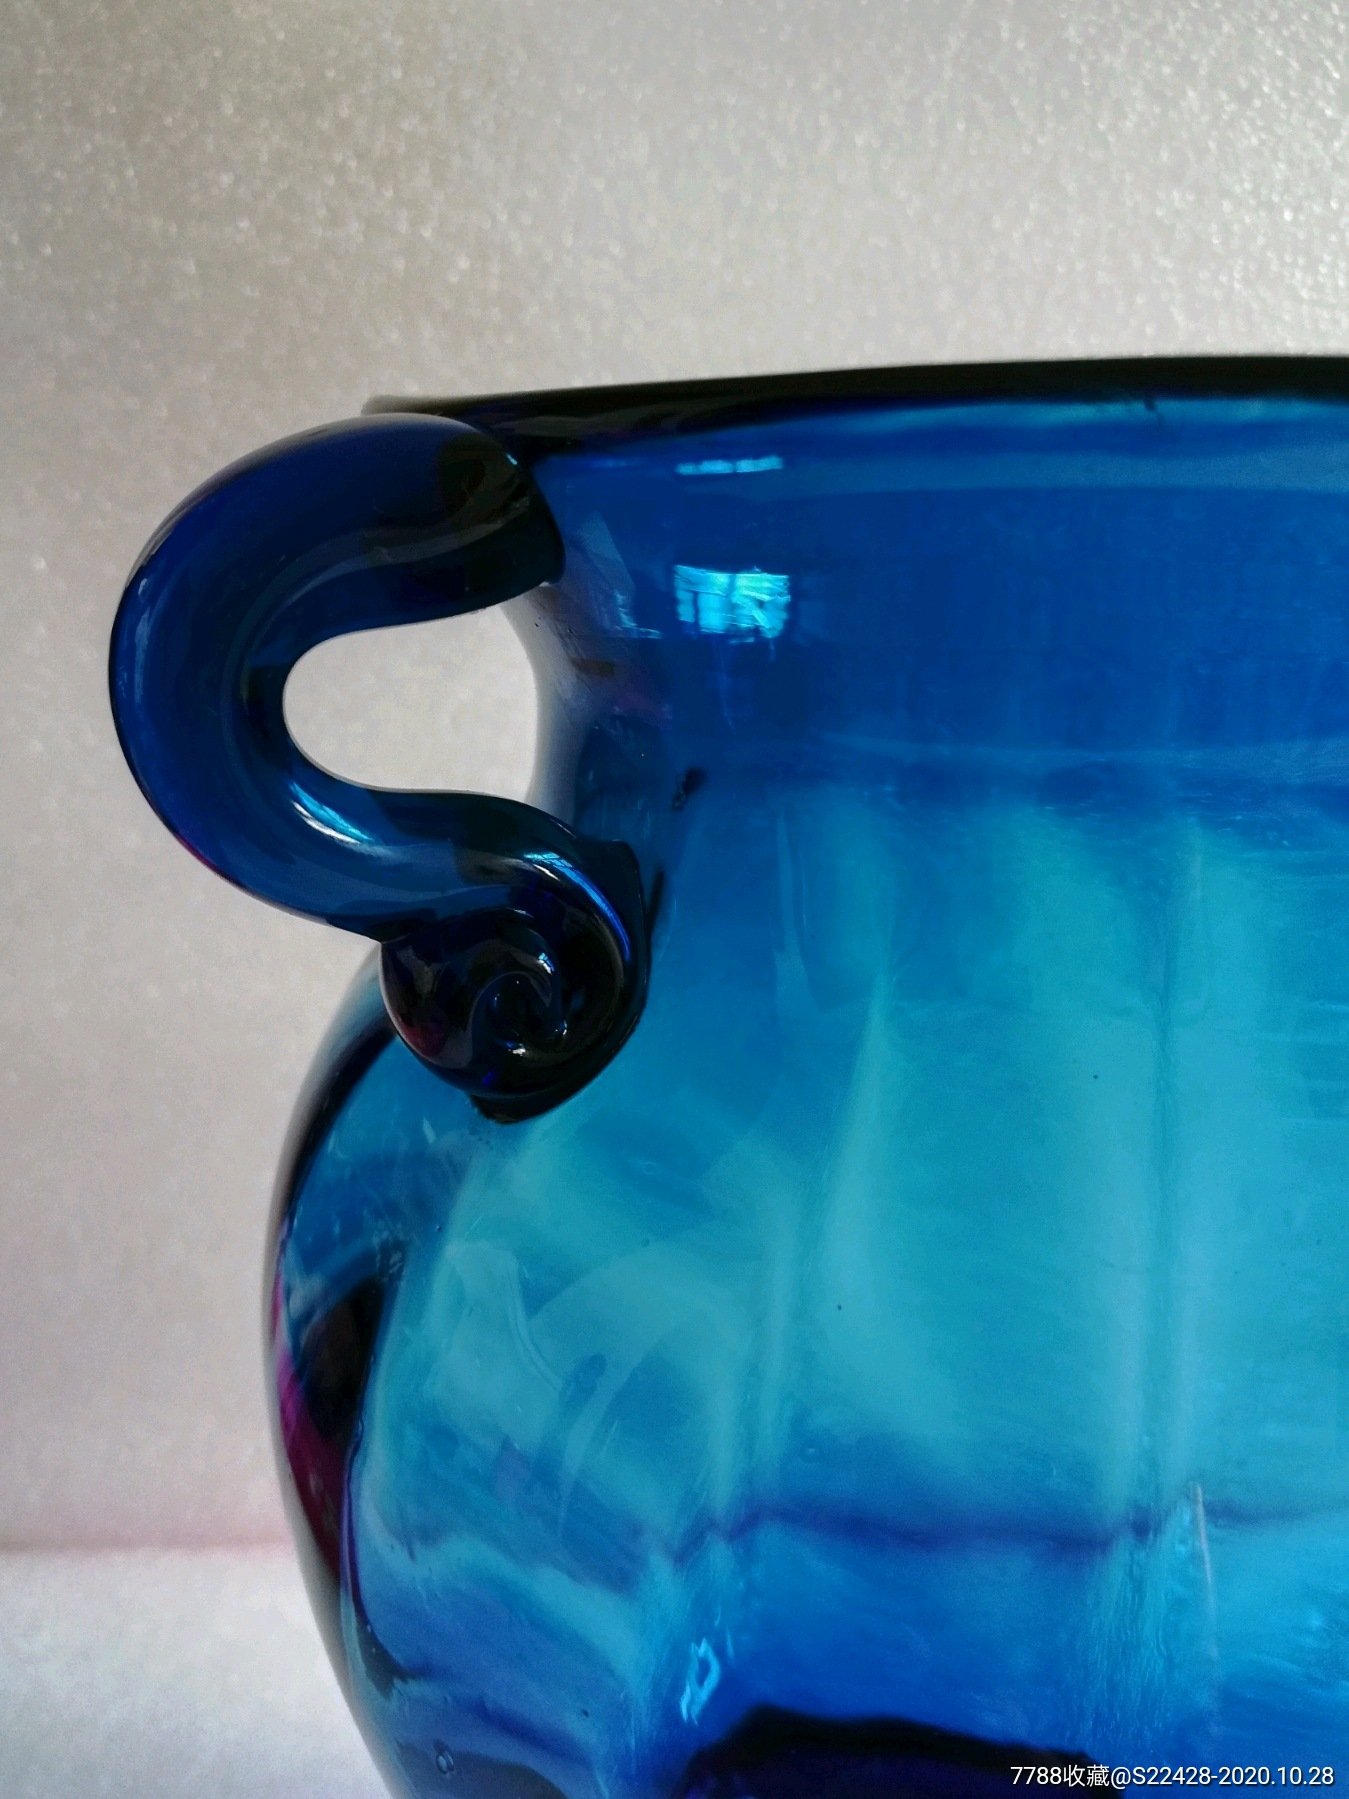 蓝色妖姬(琉璃)玻璃双耳花瓶